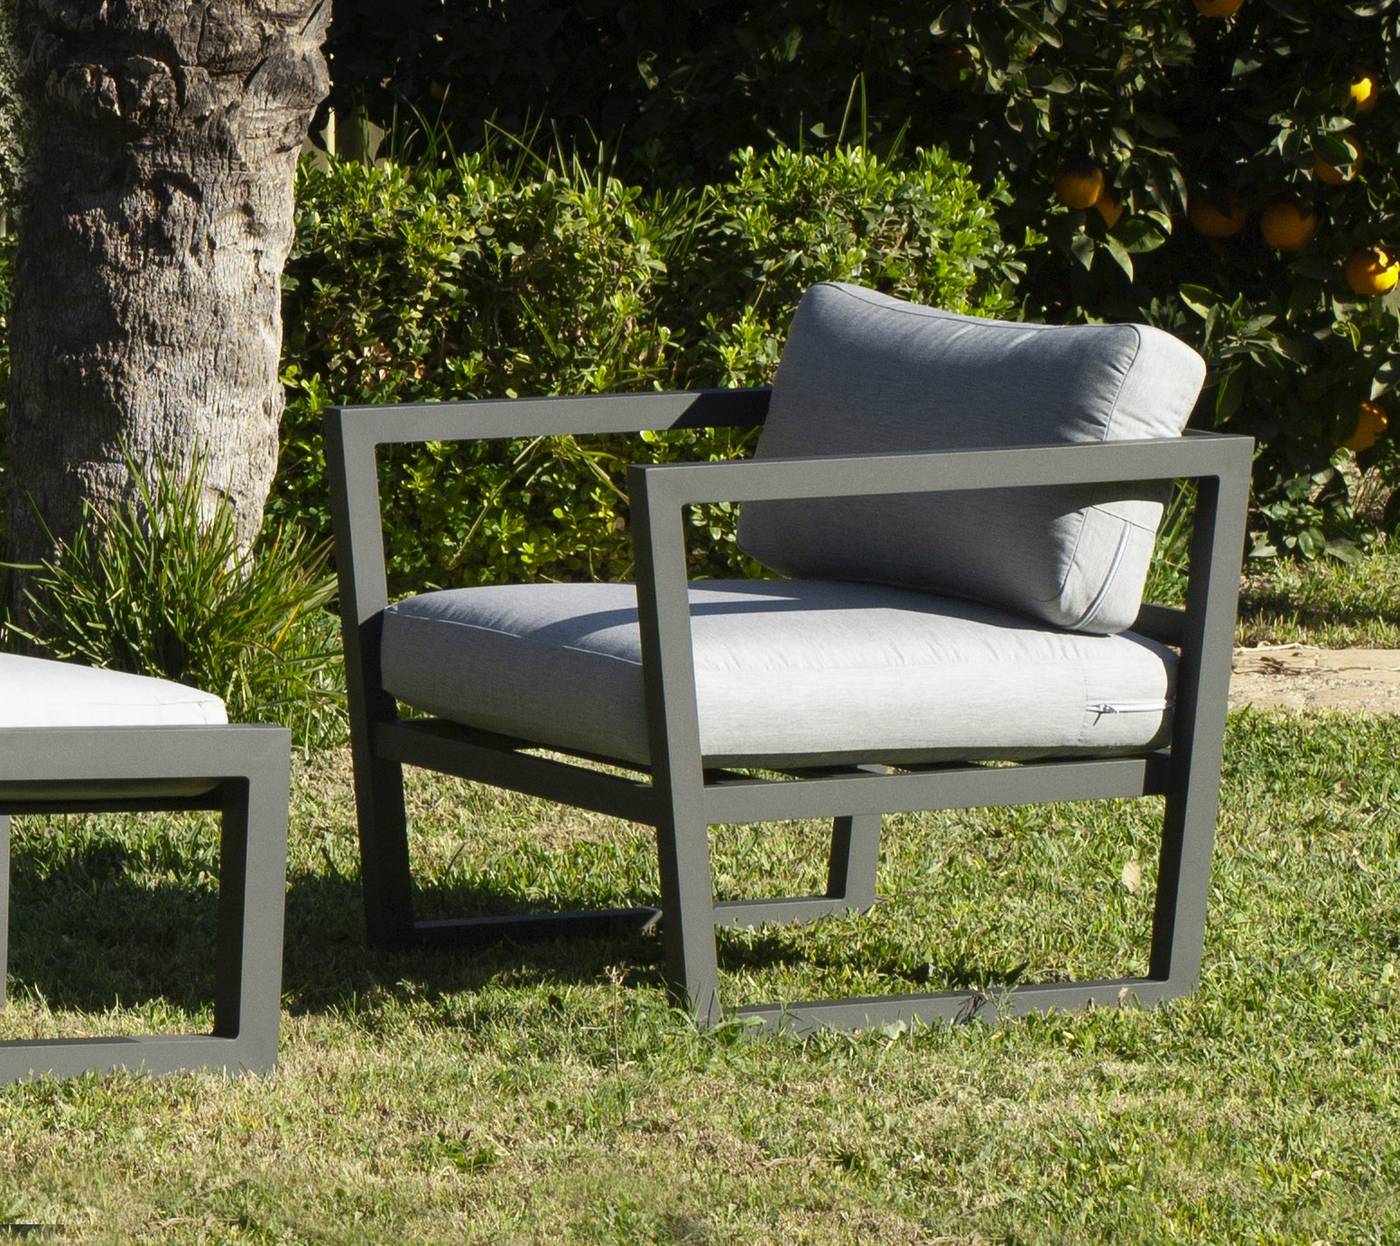 Set Aluminio Luxe Montana-10 - Conjunto aluminio: 1 sofá 3 plazas + 2 sillones + 1 mesa de centro + 2 reposapiés. Disponible en color blanco o antracita.